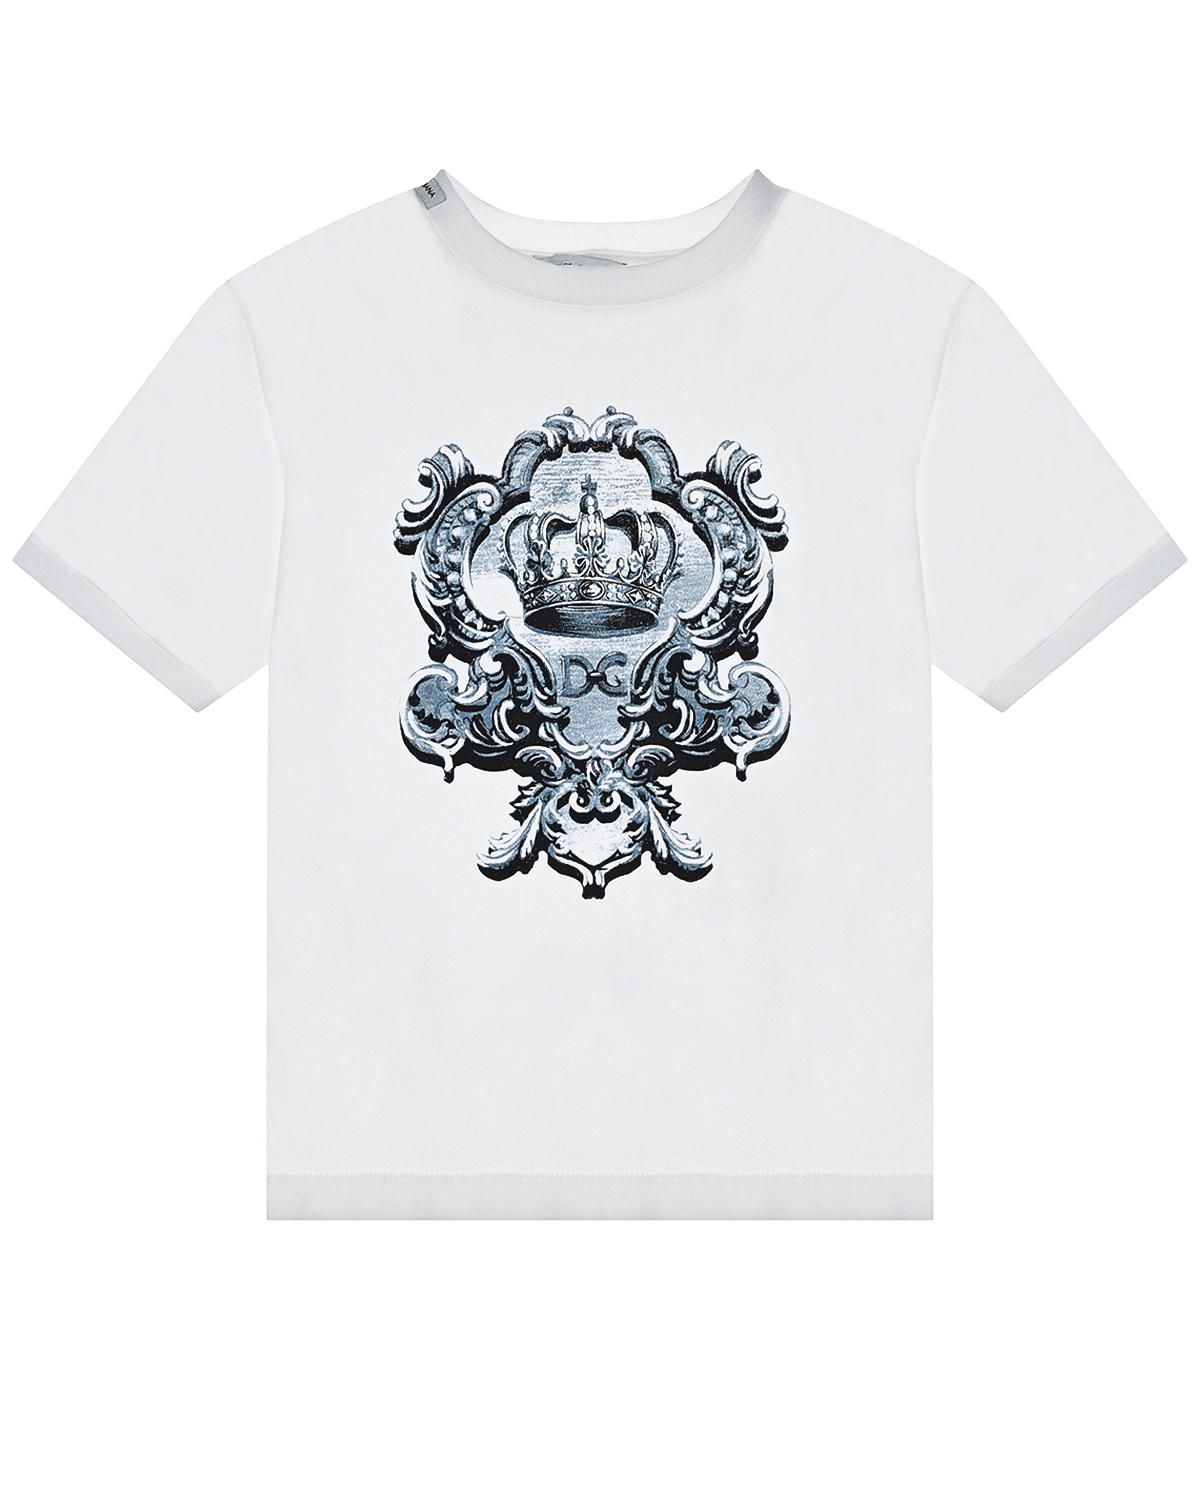 Купить Белая футболка с принтом герб Dolce&Gabbana детская, Белый, 100%хлопок